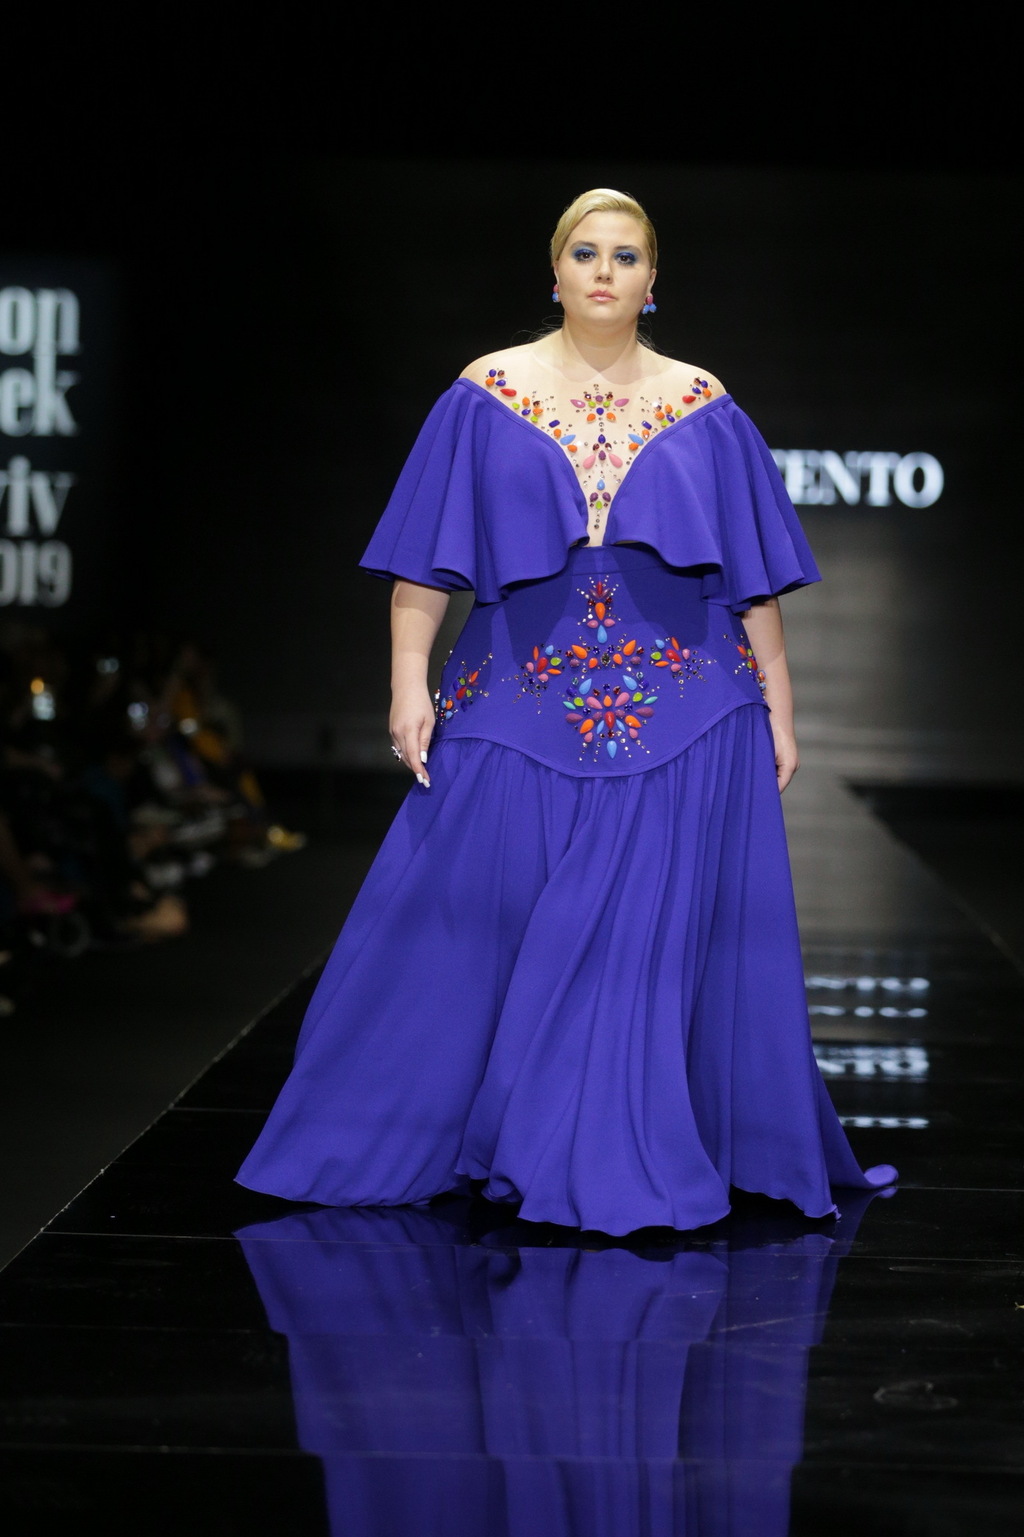 תצוגה של דרור קונטנטו בשבוע האופנה